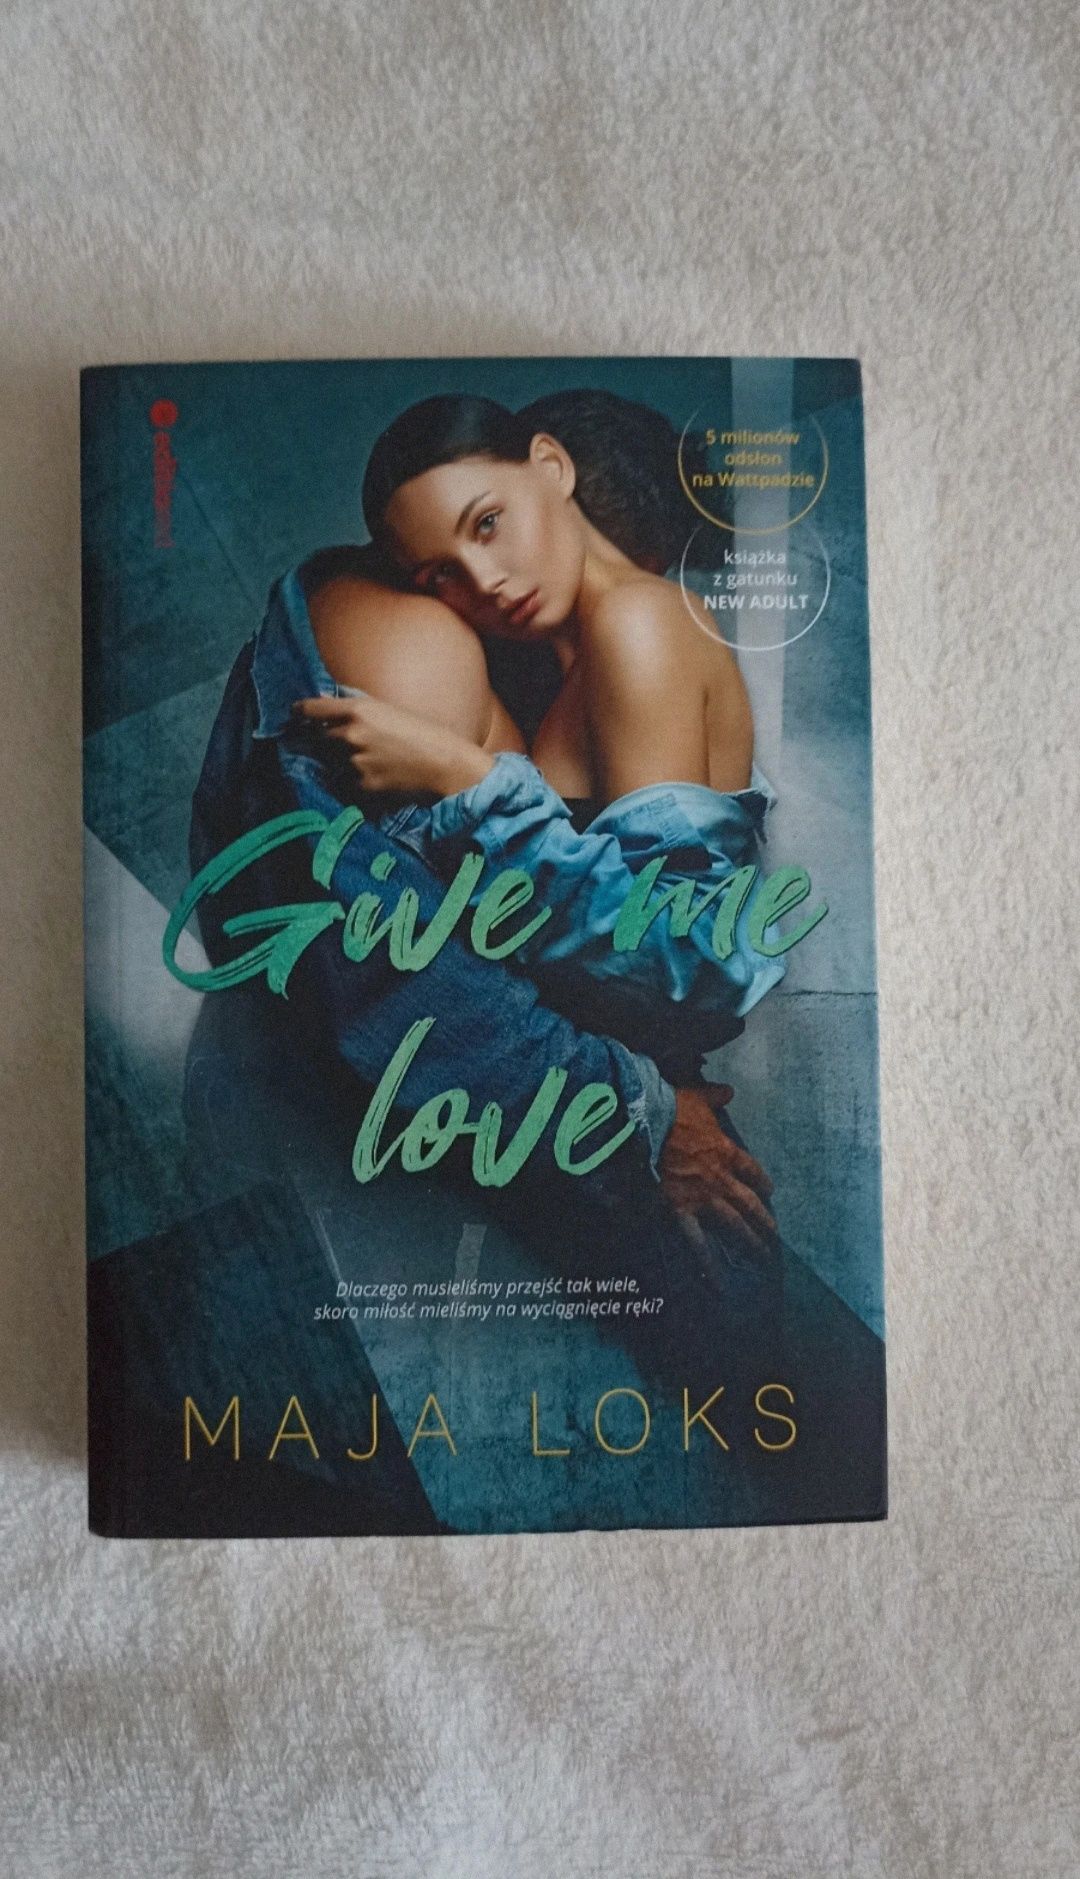 Maja Loks  - "give me love"